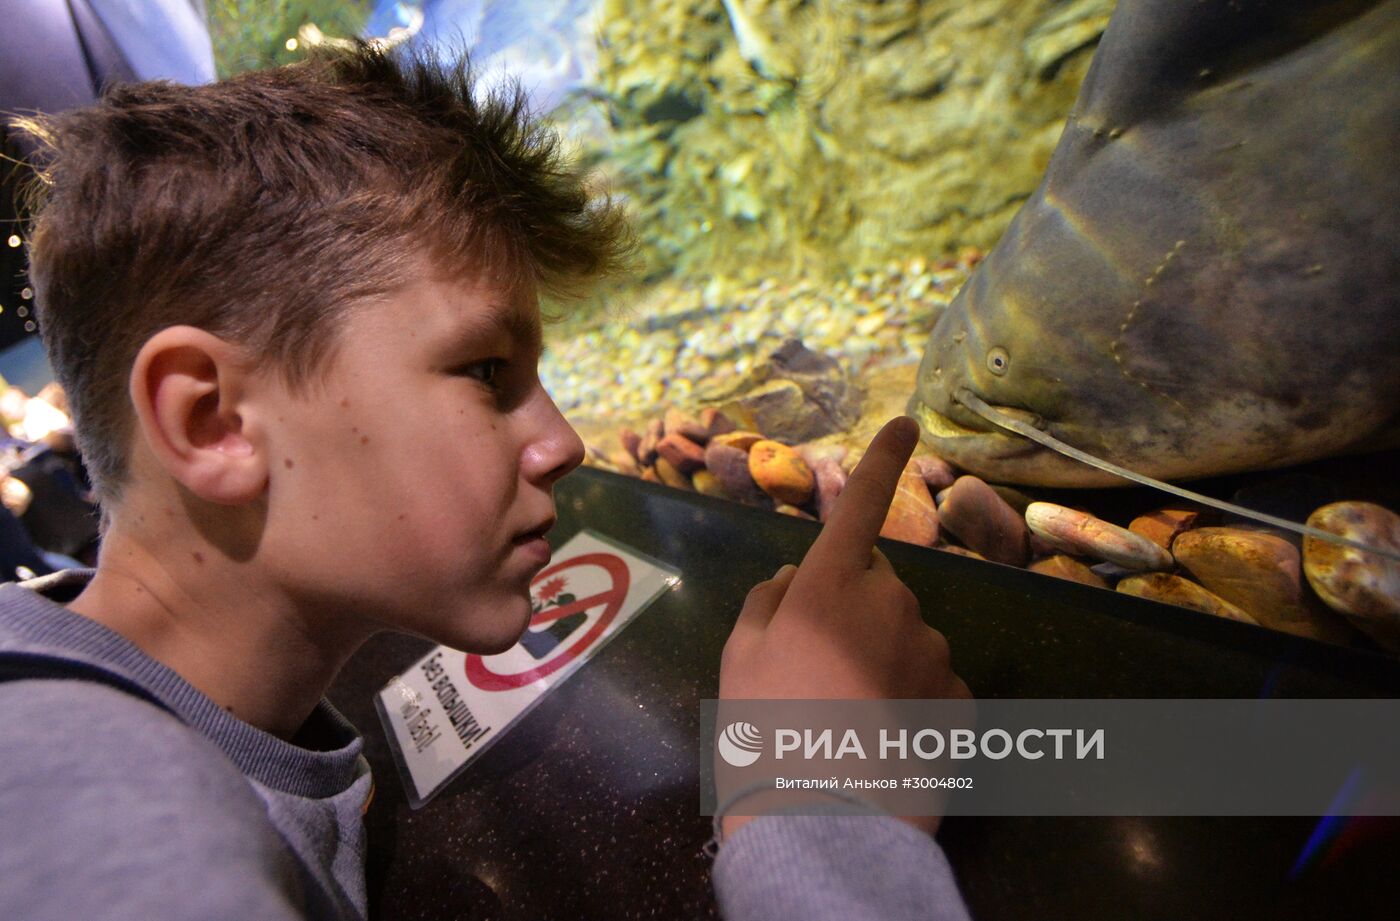 Приморский океанариум во Владивостоке